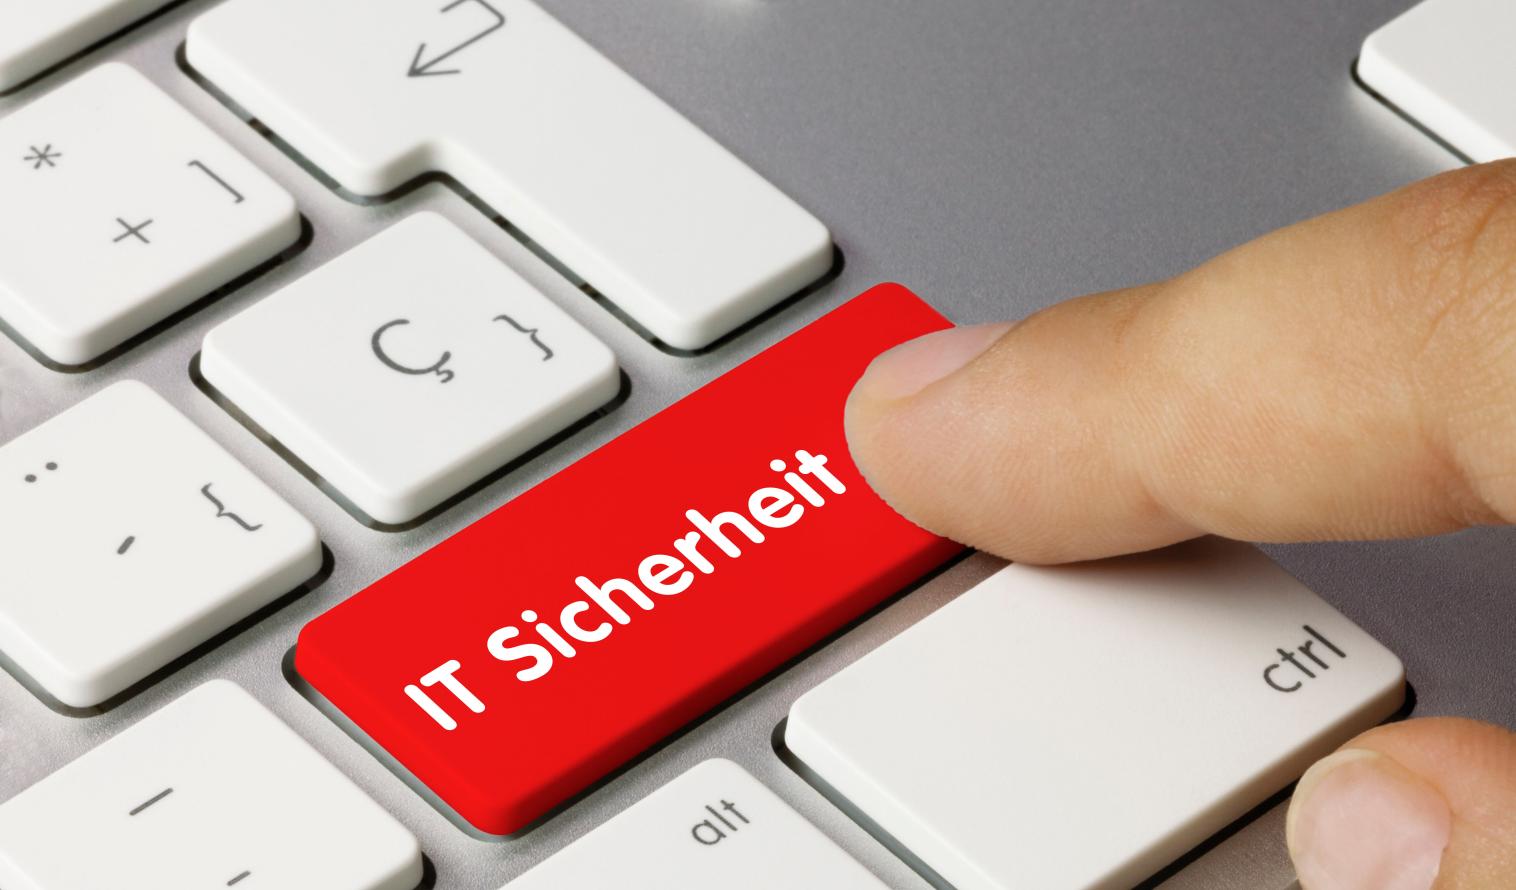 Ausschnitt einer Tastatur mit einer roten Taste IT-Sicherheit, eine Hand drückt auf diese Taste